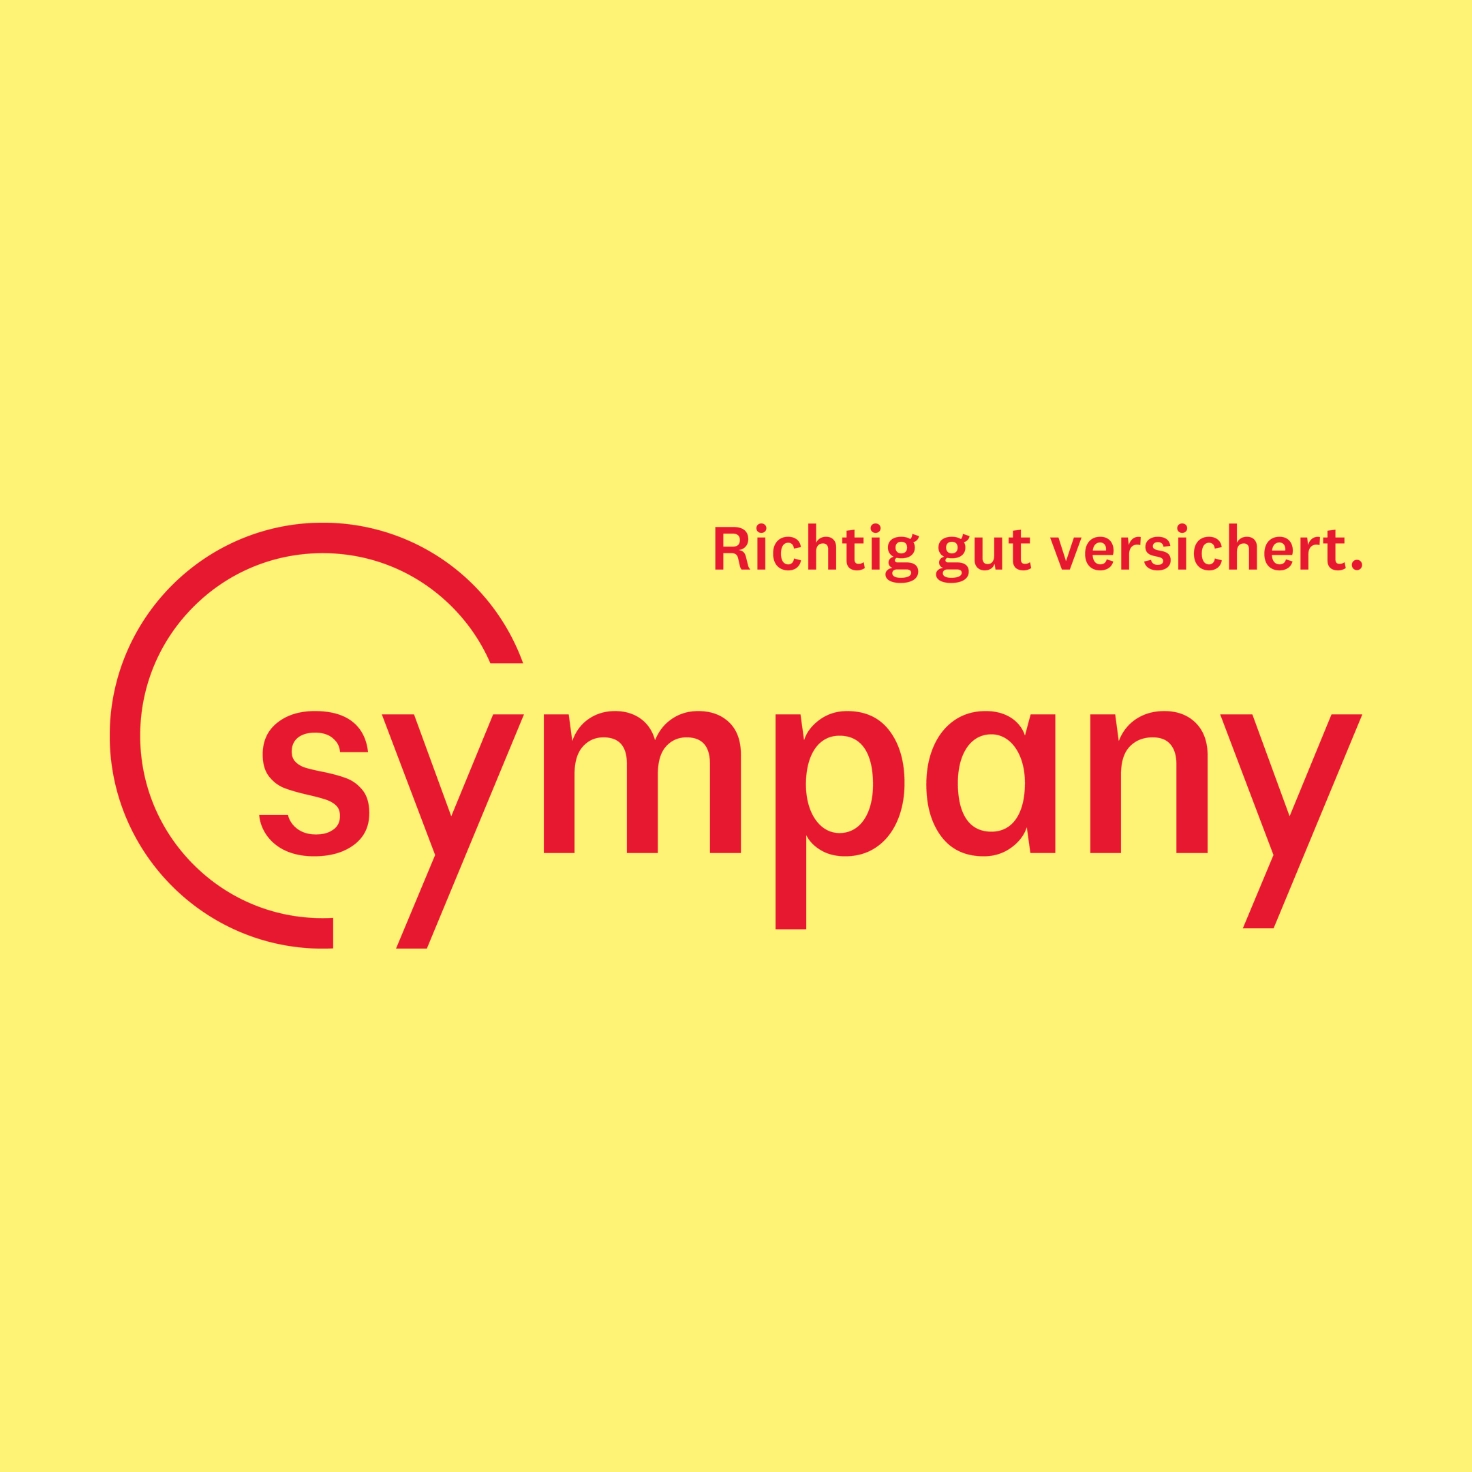 Logo des Versicherers Sympany inklusive des Claims "Richtig gut versichert"